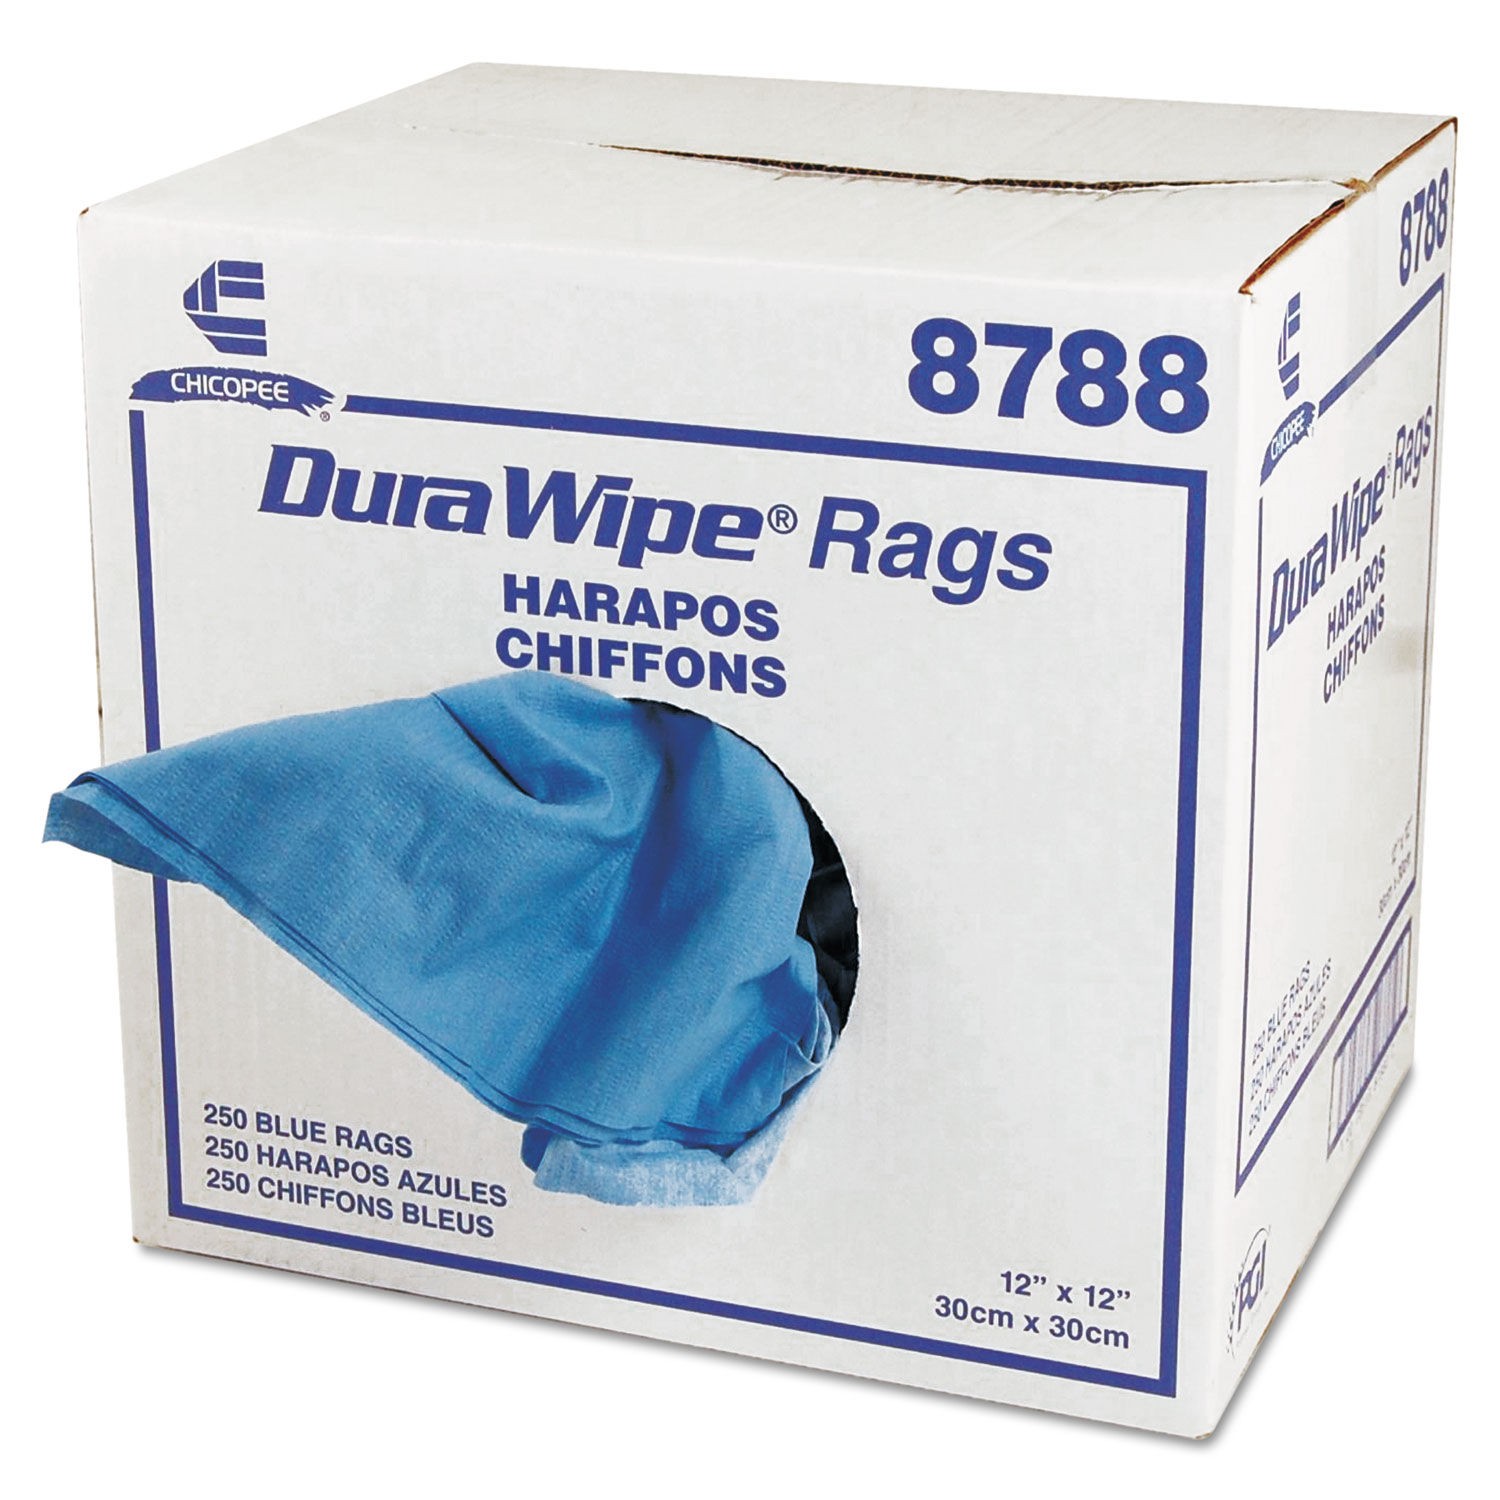 DuraWipe General Purpose Towels, 12 x 12, Blue, 250/Carton